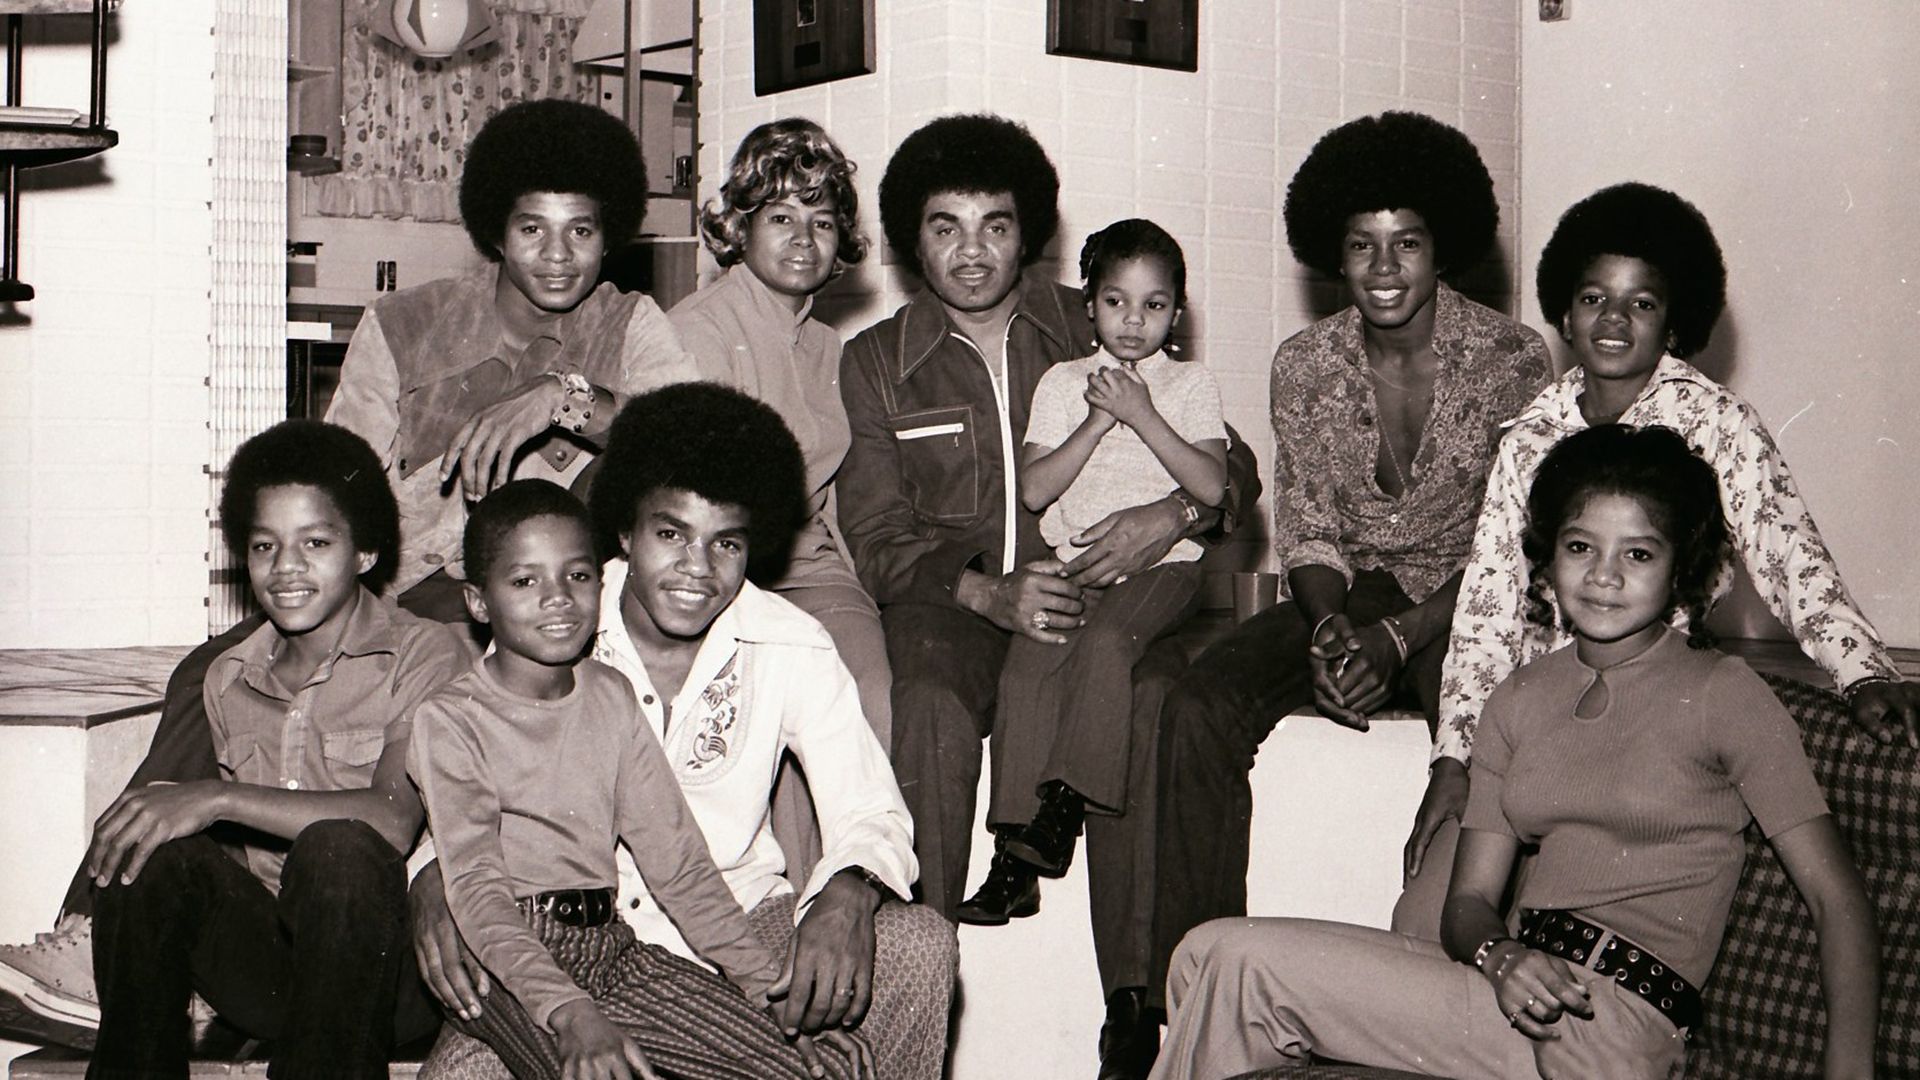 Michael Jackson's family in full